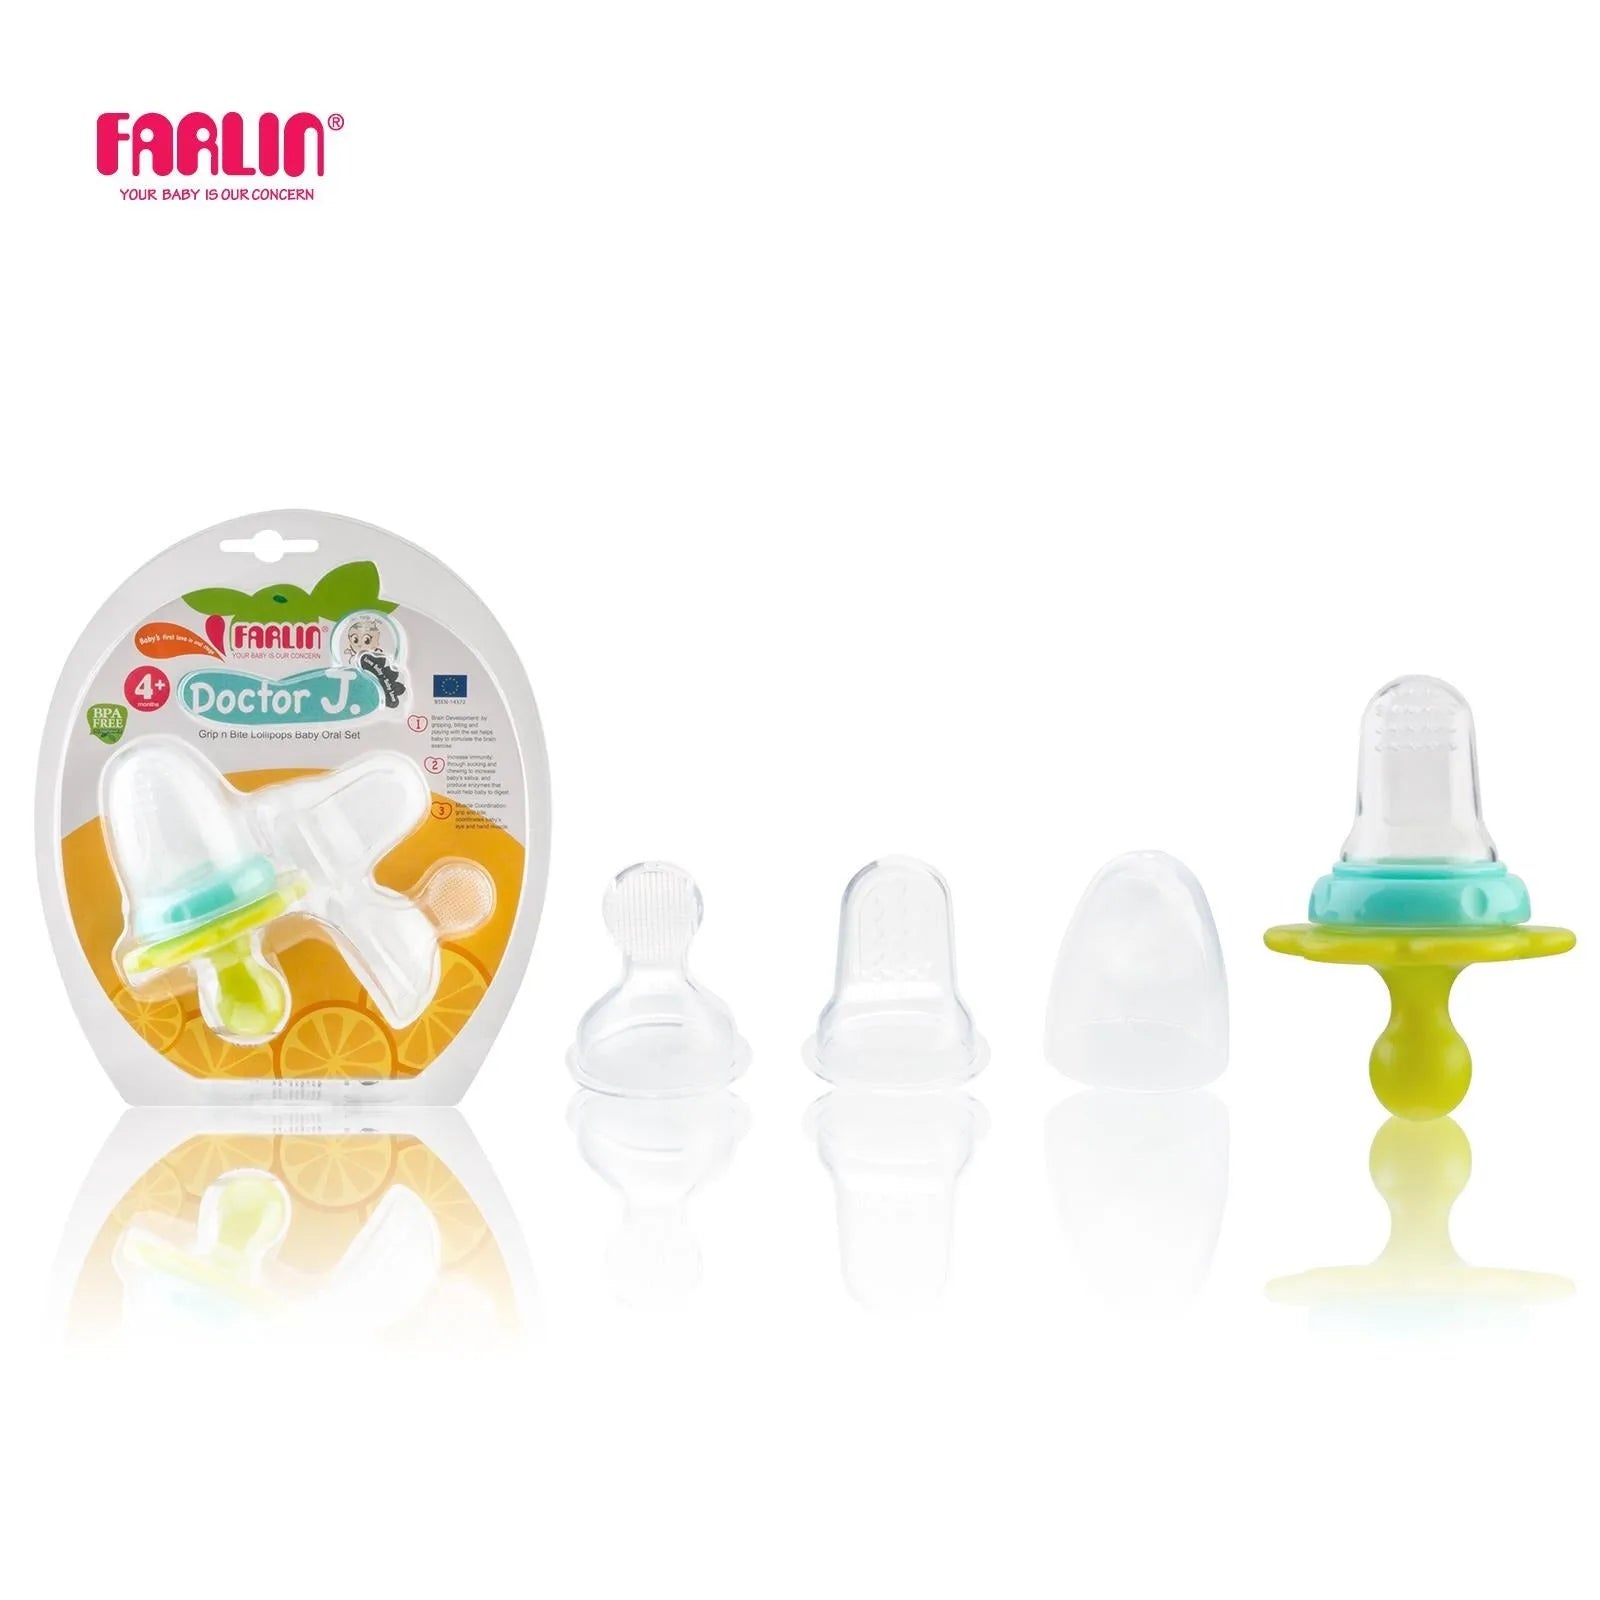 Farlin Hygienic Oral Set